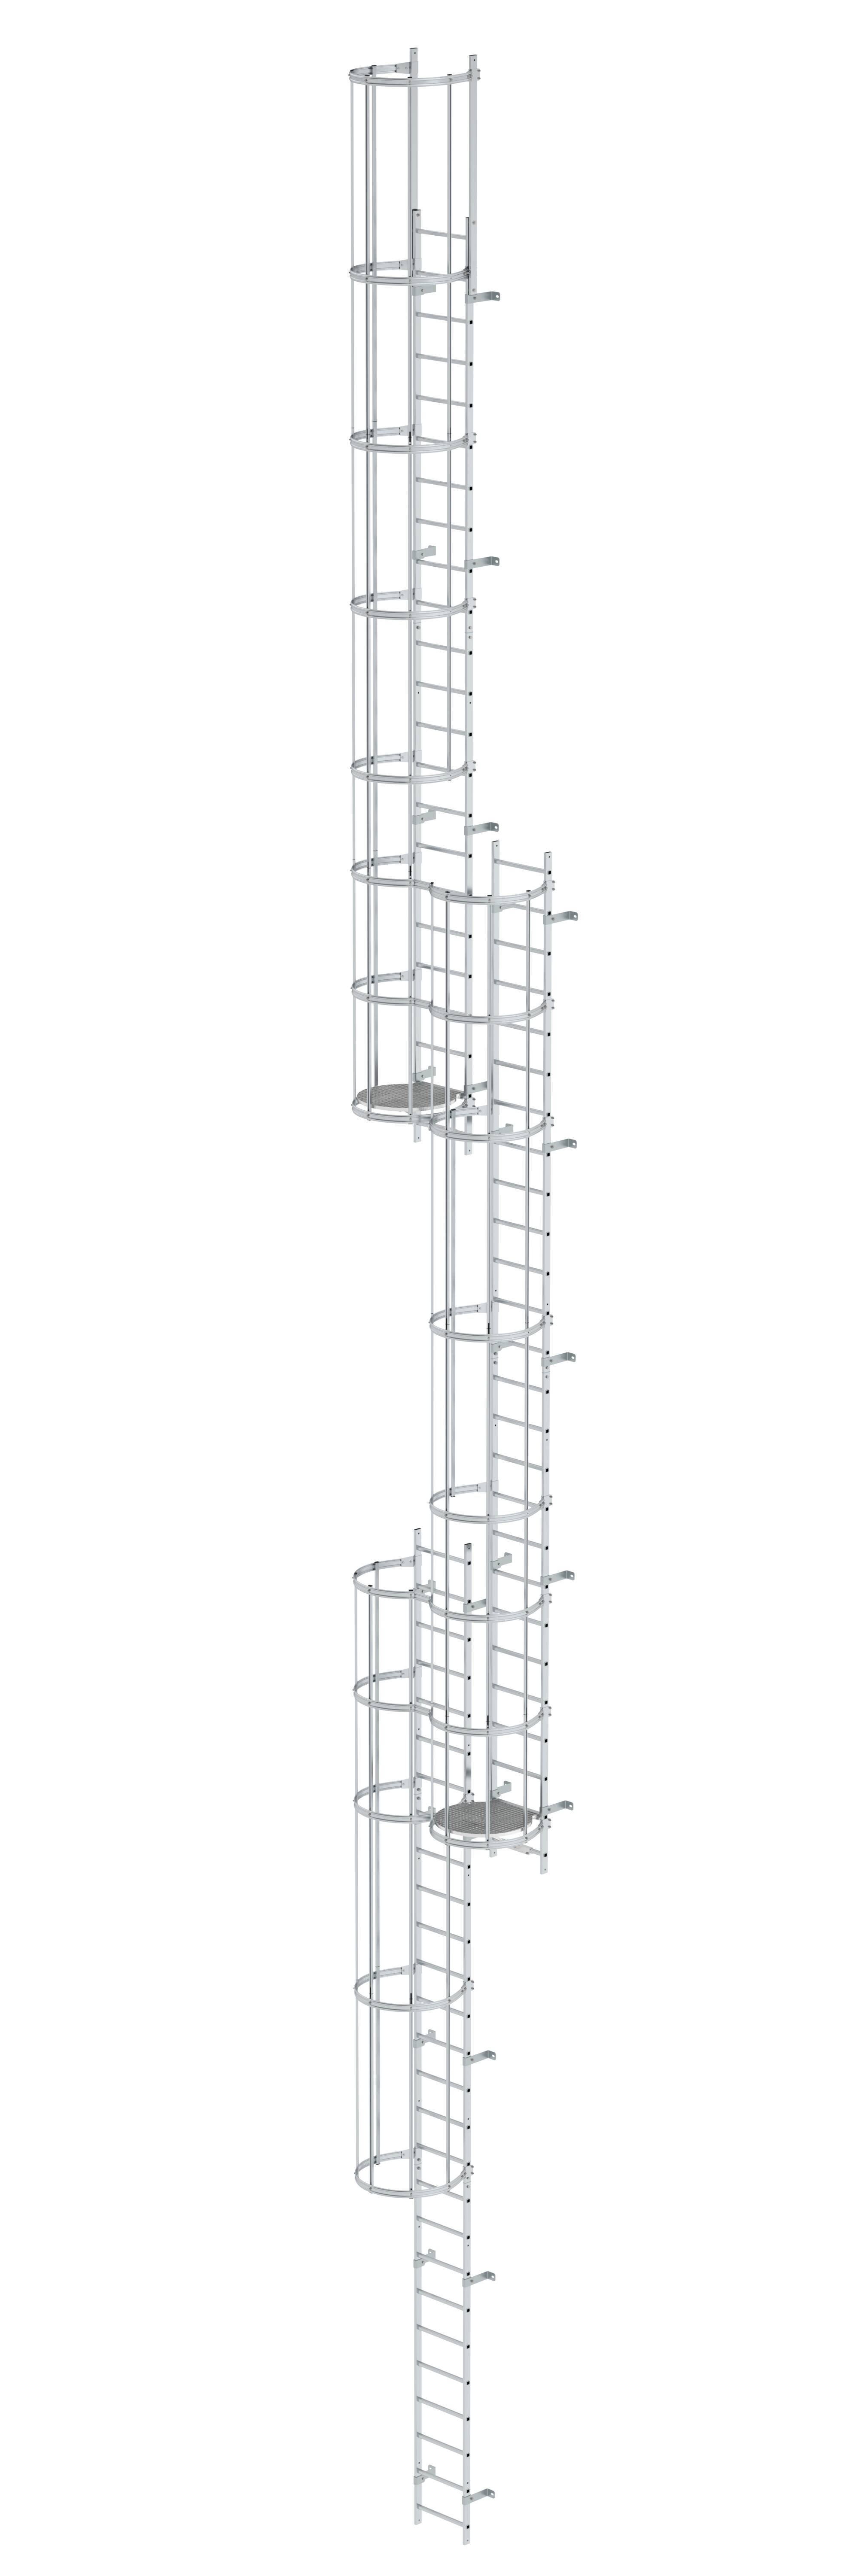 MUNK Mehrzügige Steigleiter mit Rückenschutz (Notleiter) Aluminium blank  